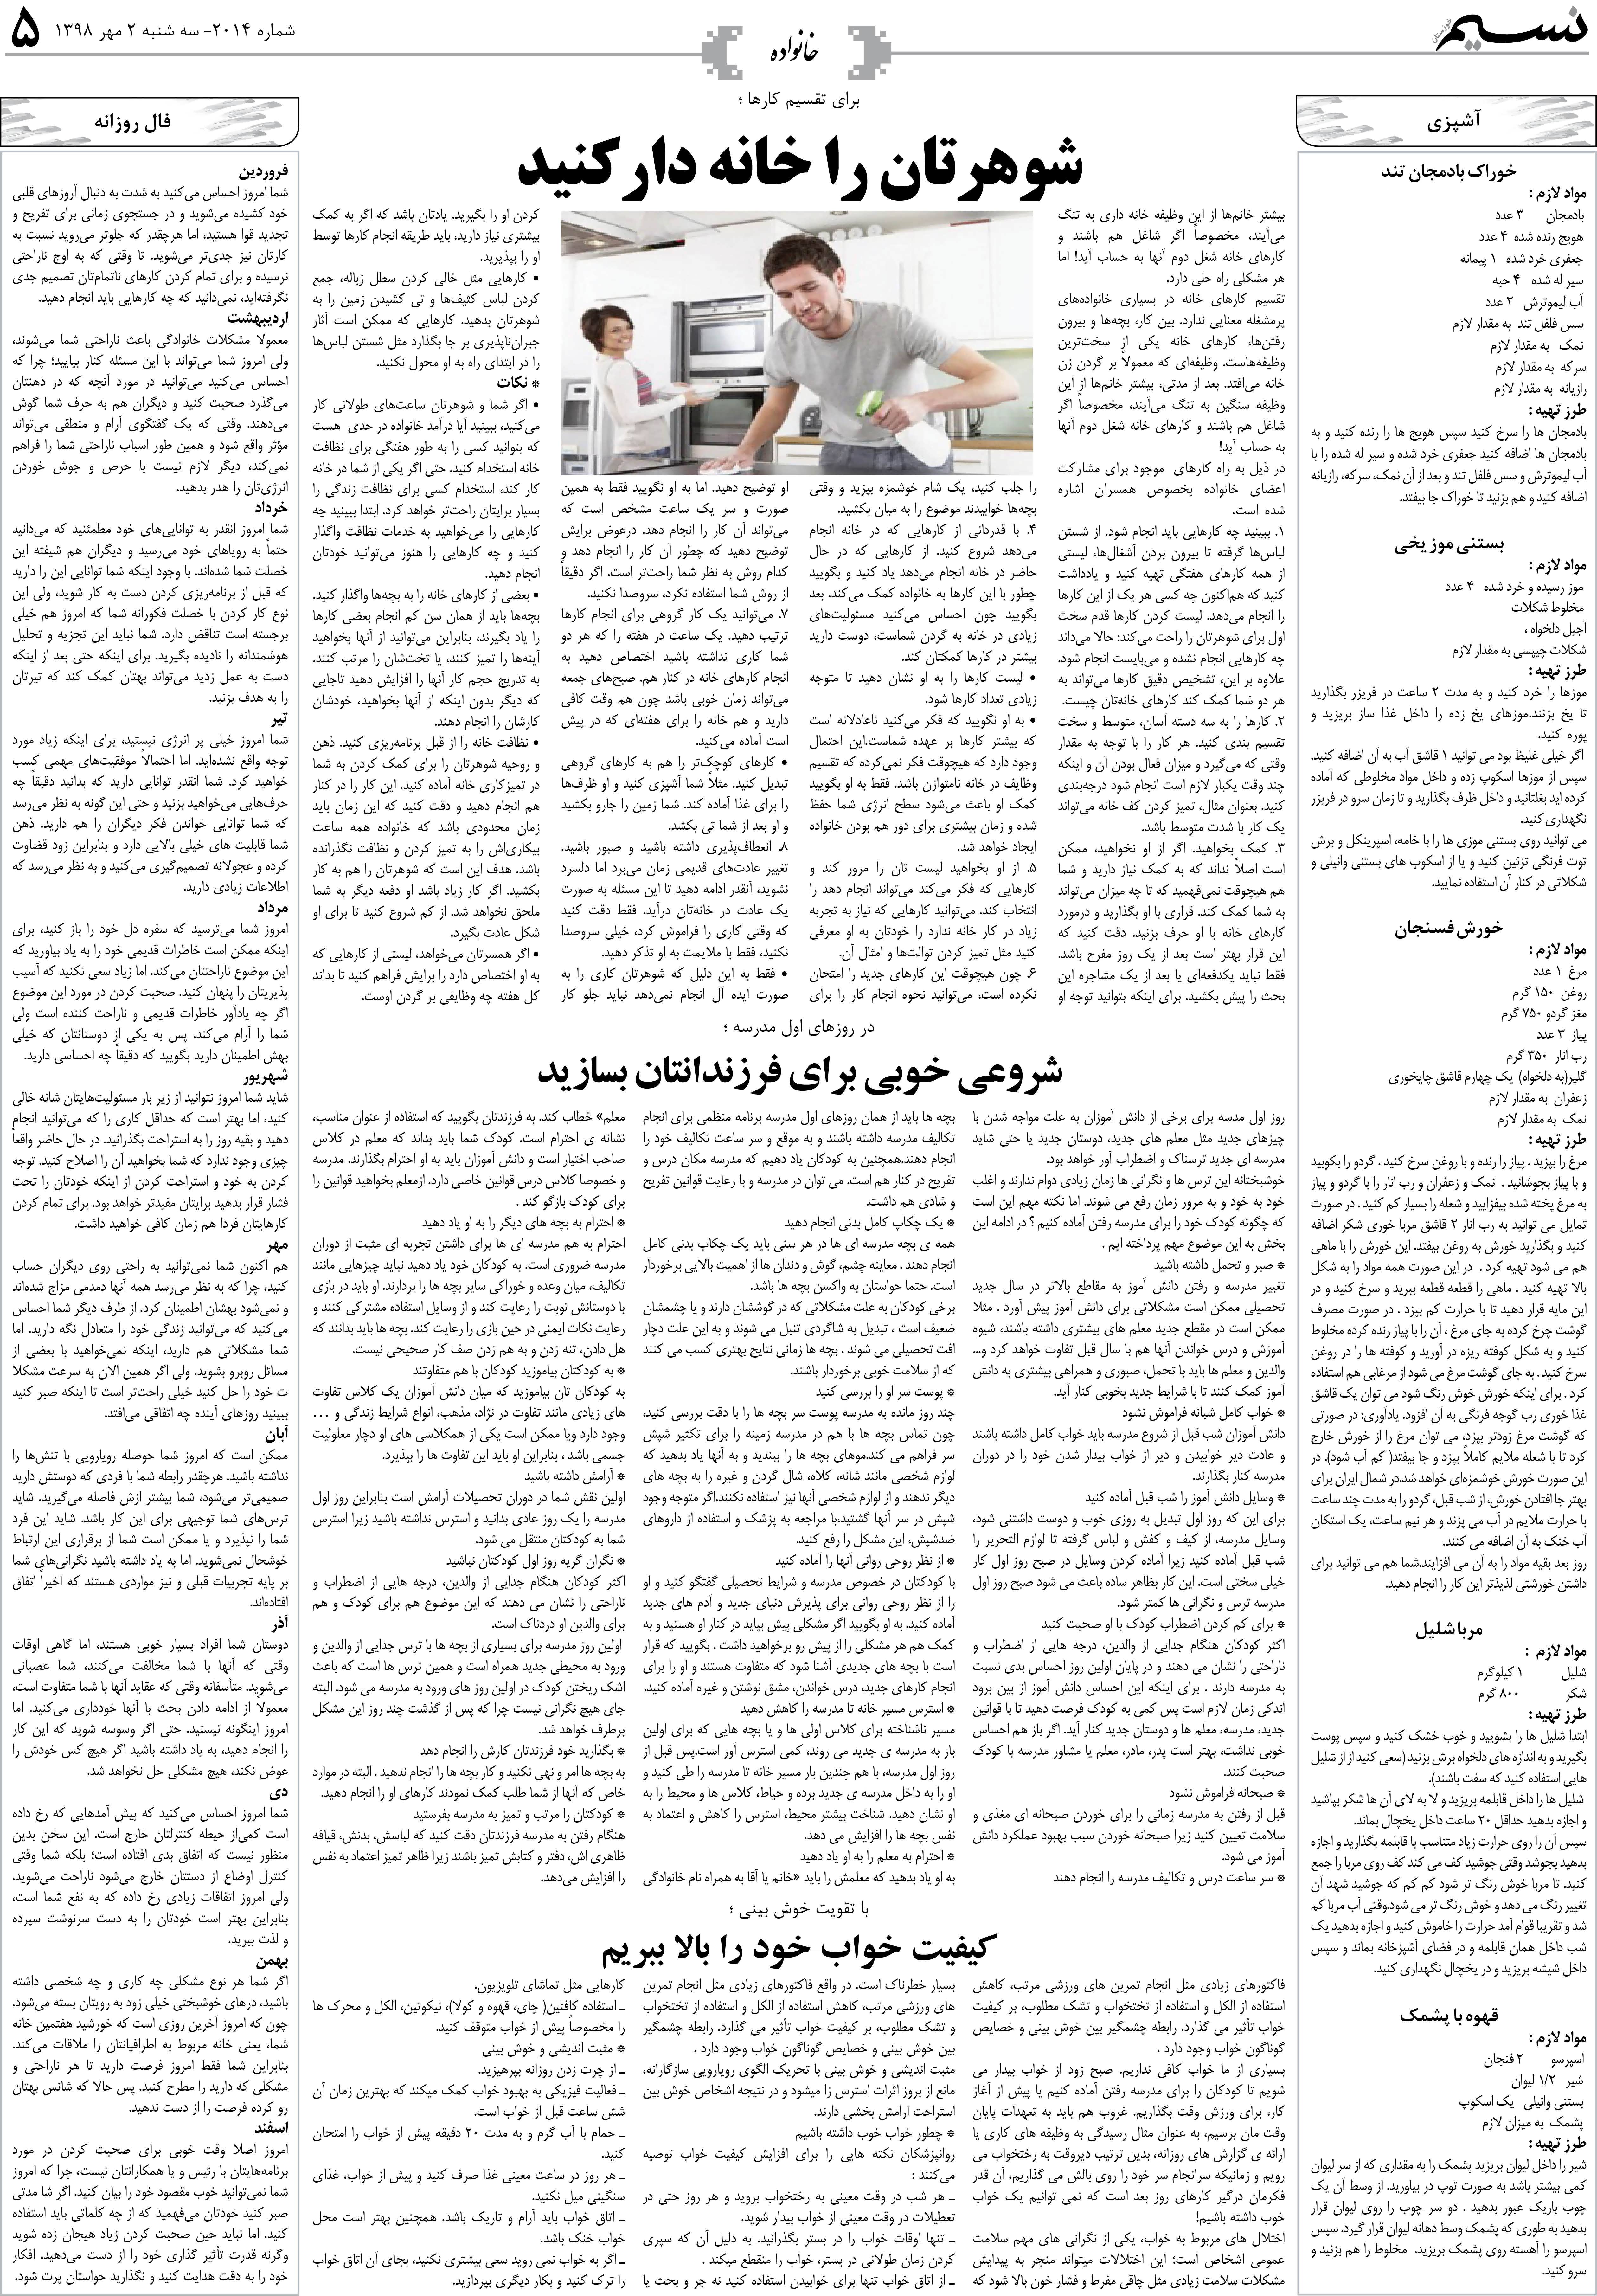 صفحه خانواده روزنامه نسیم شماره 2014